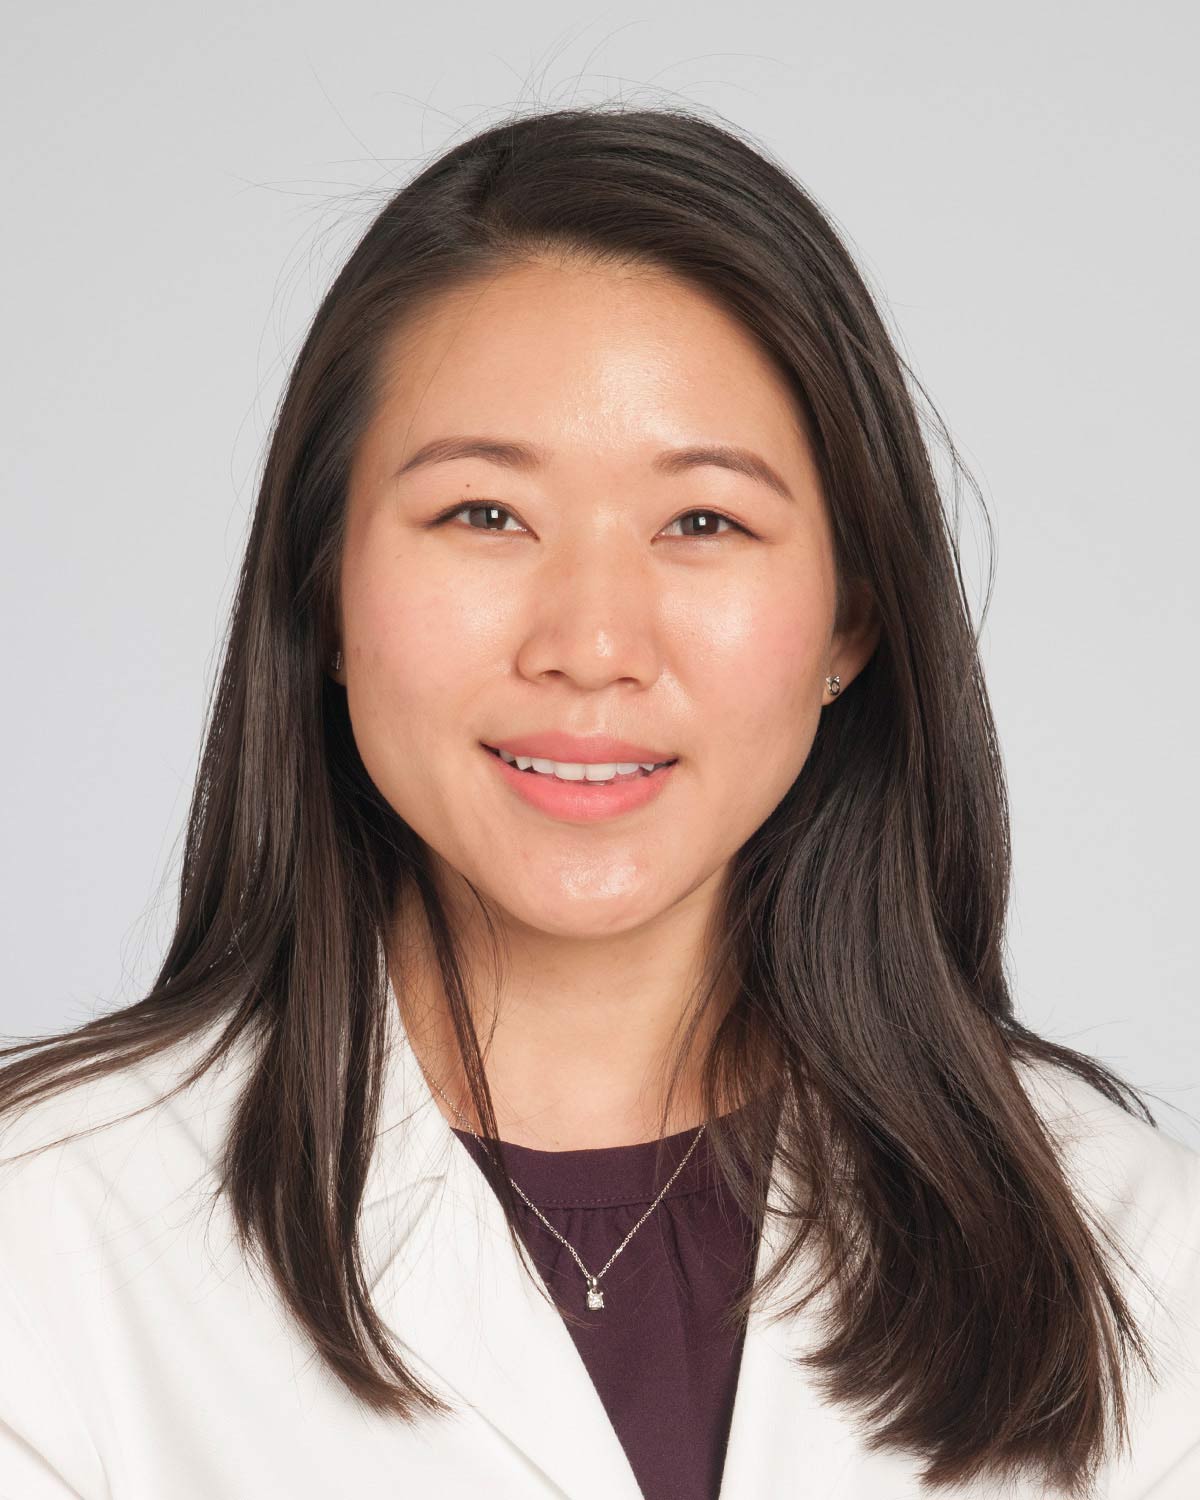 Rebecca Chen, MD